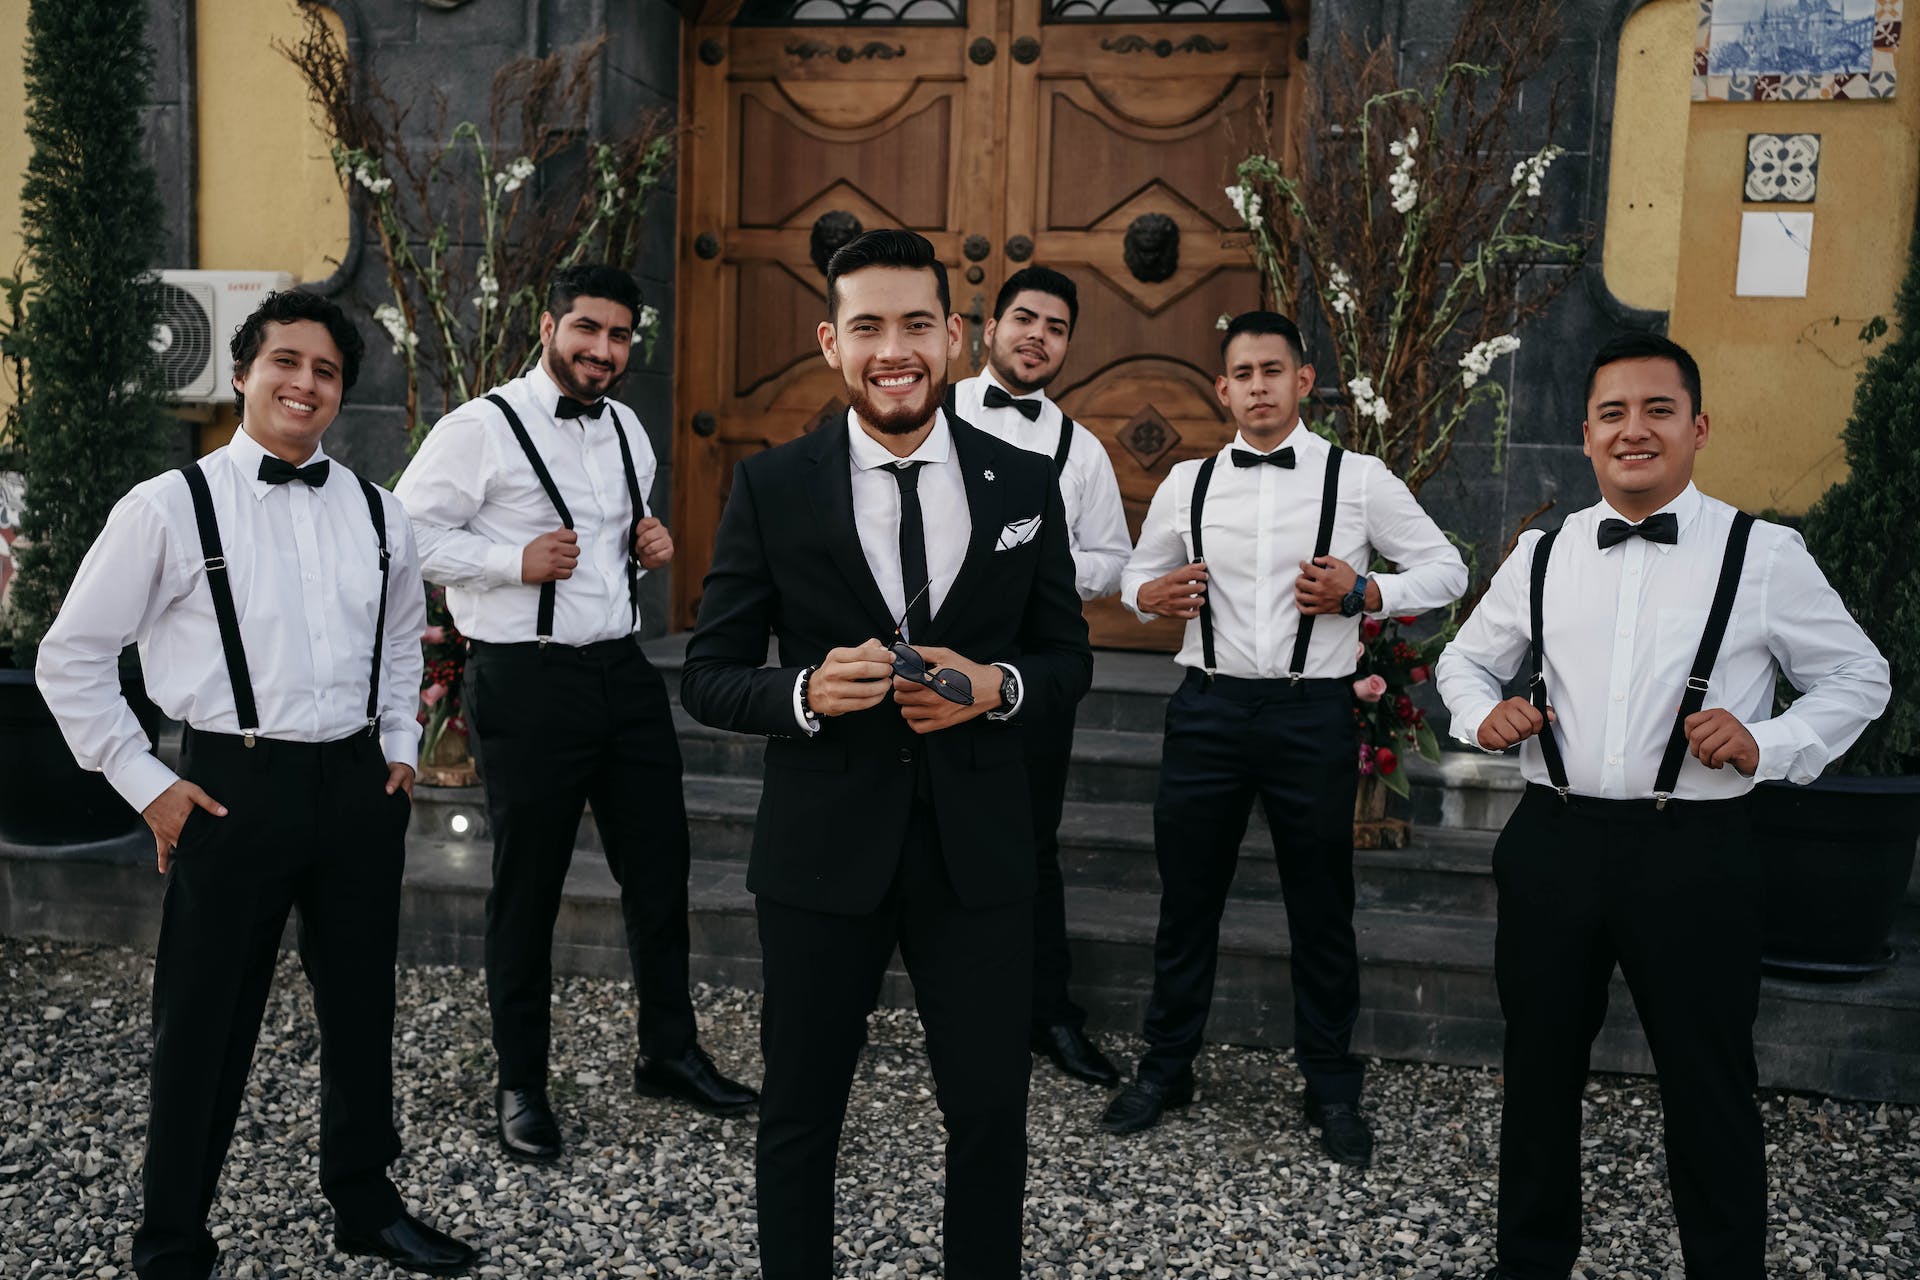 A groom with his groomsmen | Source: Pexels